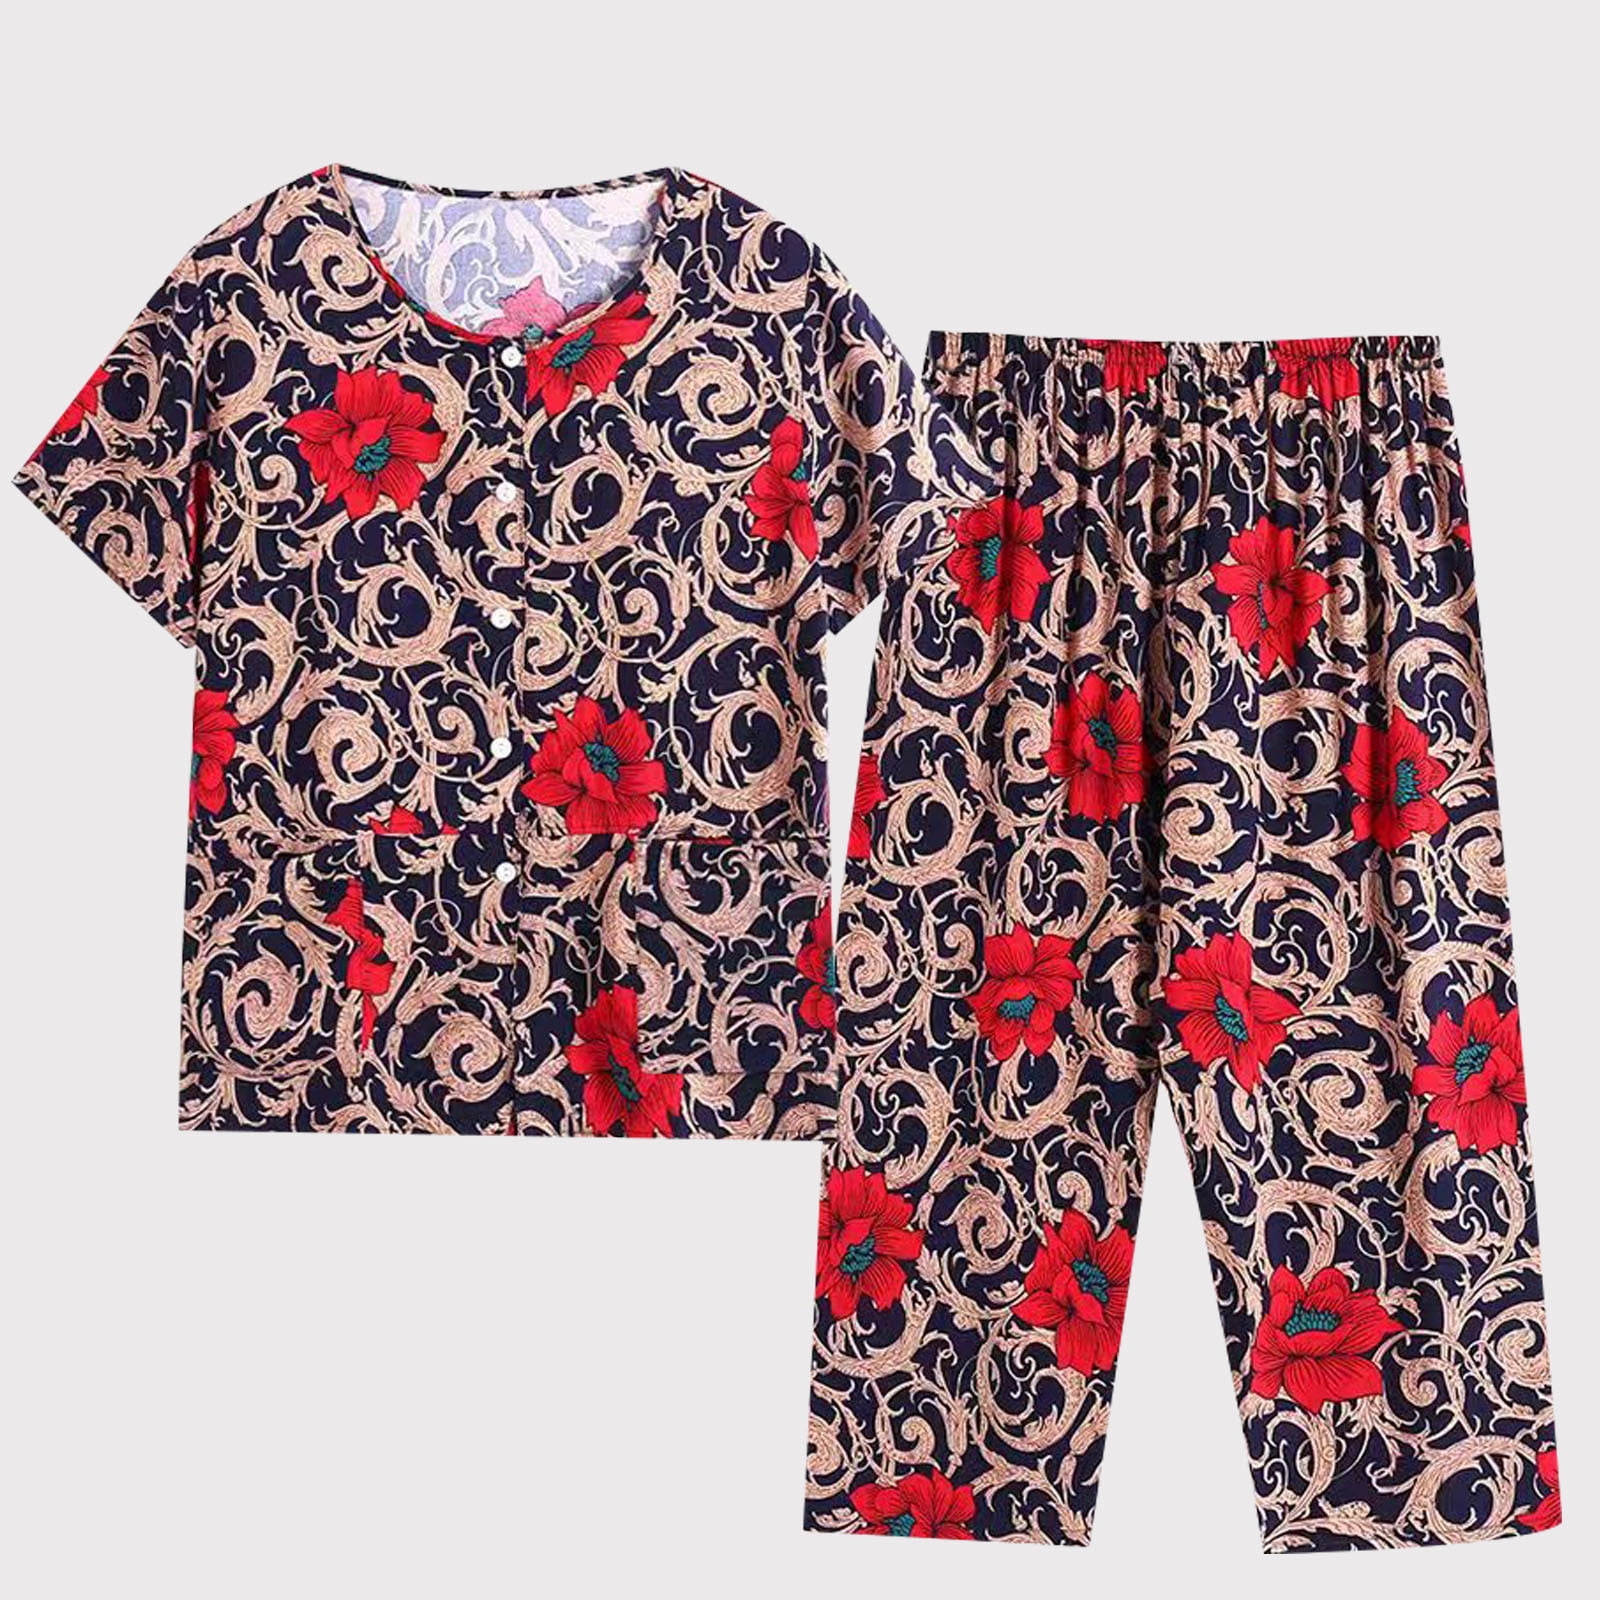 Njoeus Floral Capris Pajamas Set Women 2 Piece Short Sleeve Button-Down ...